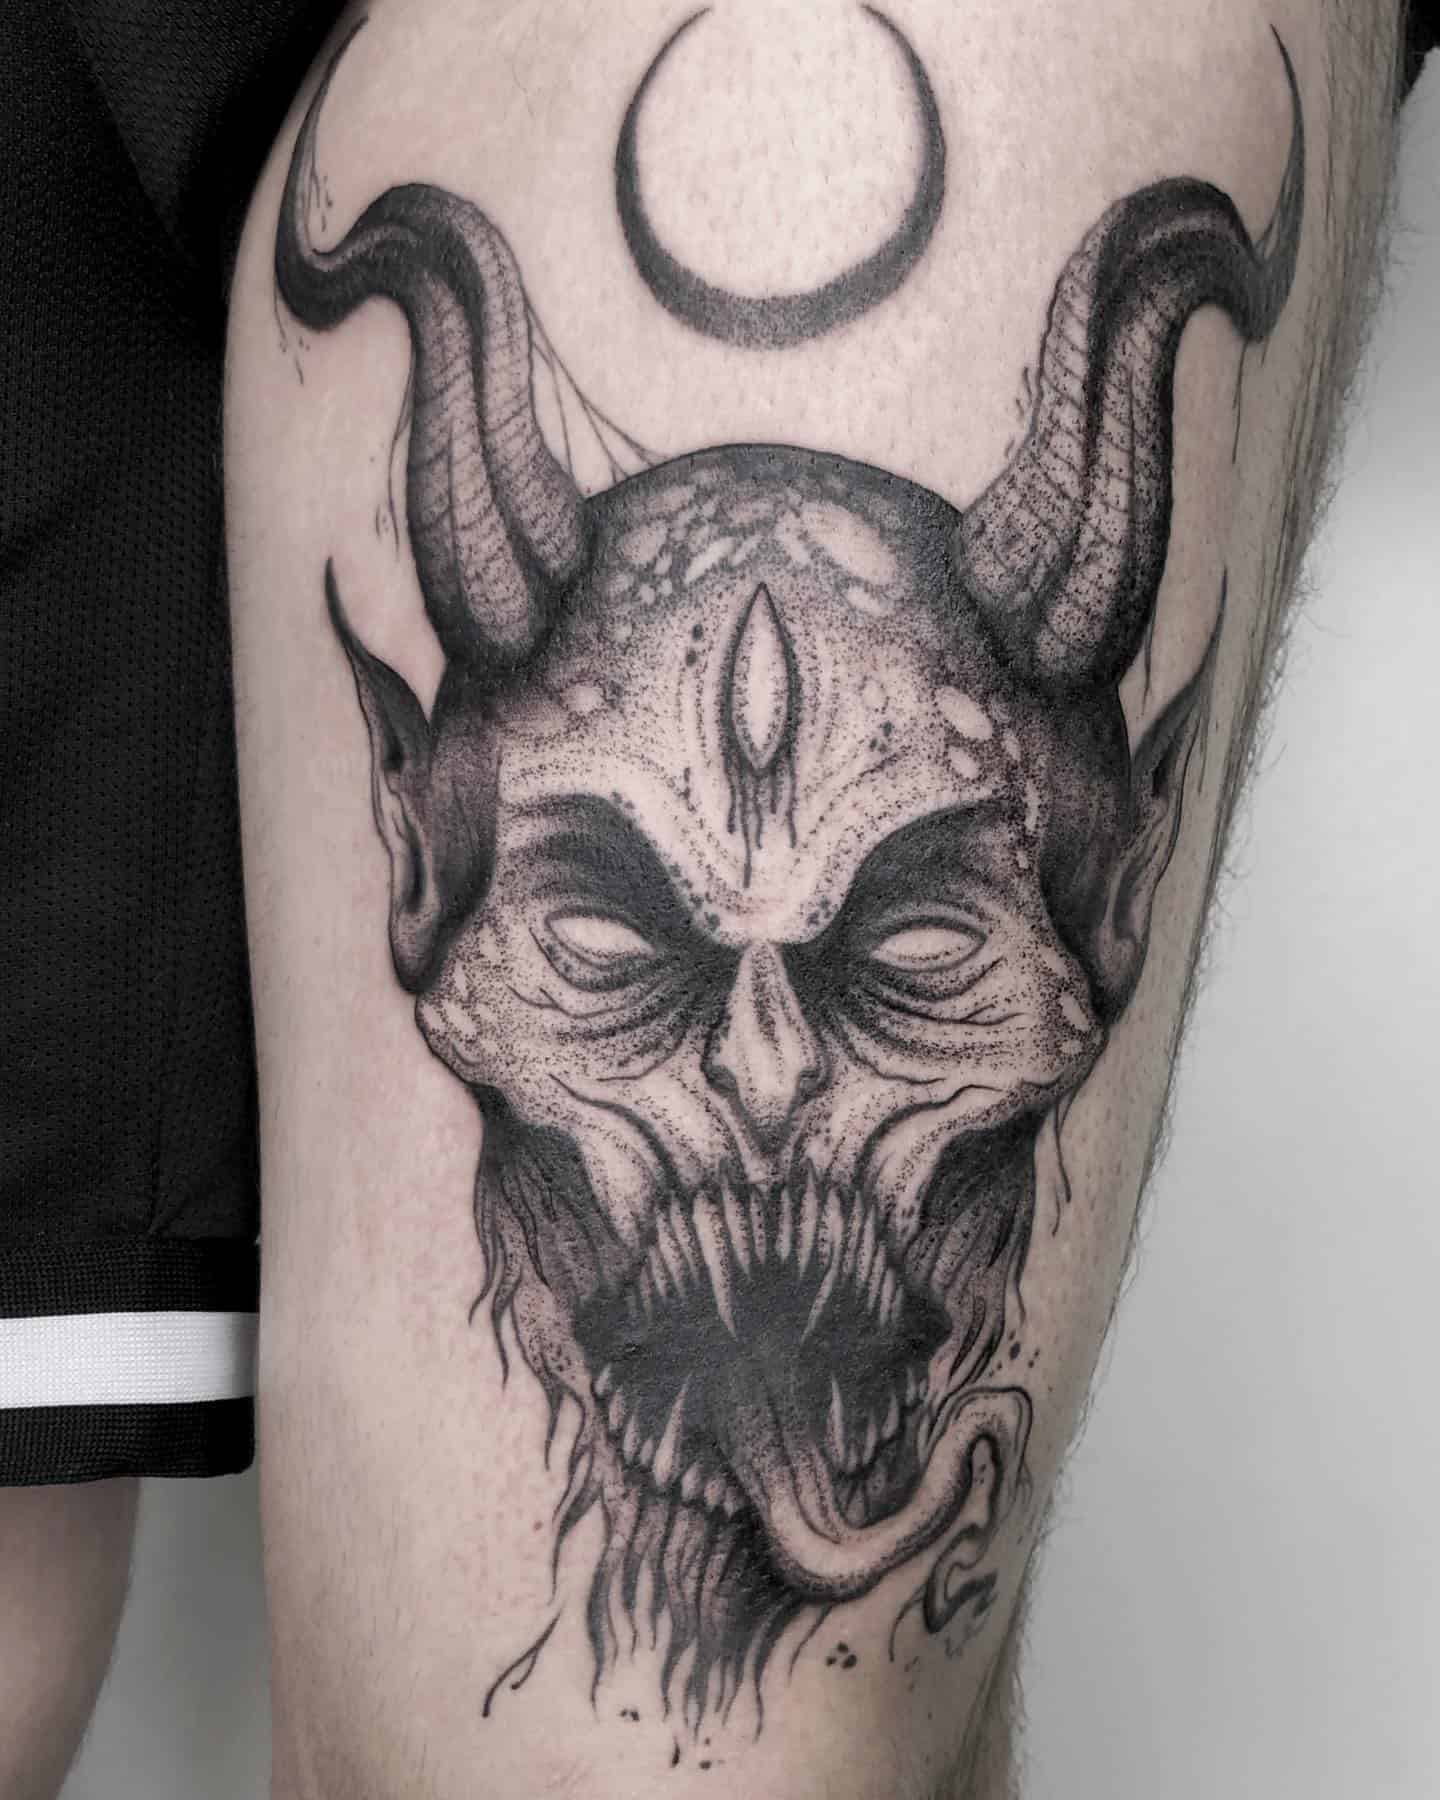 Tatuaje de demonio 2